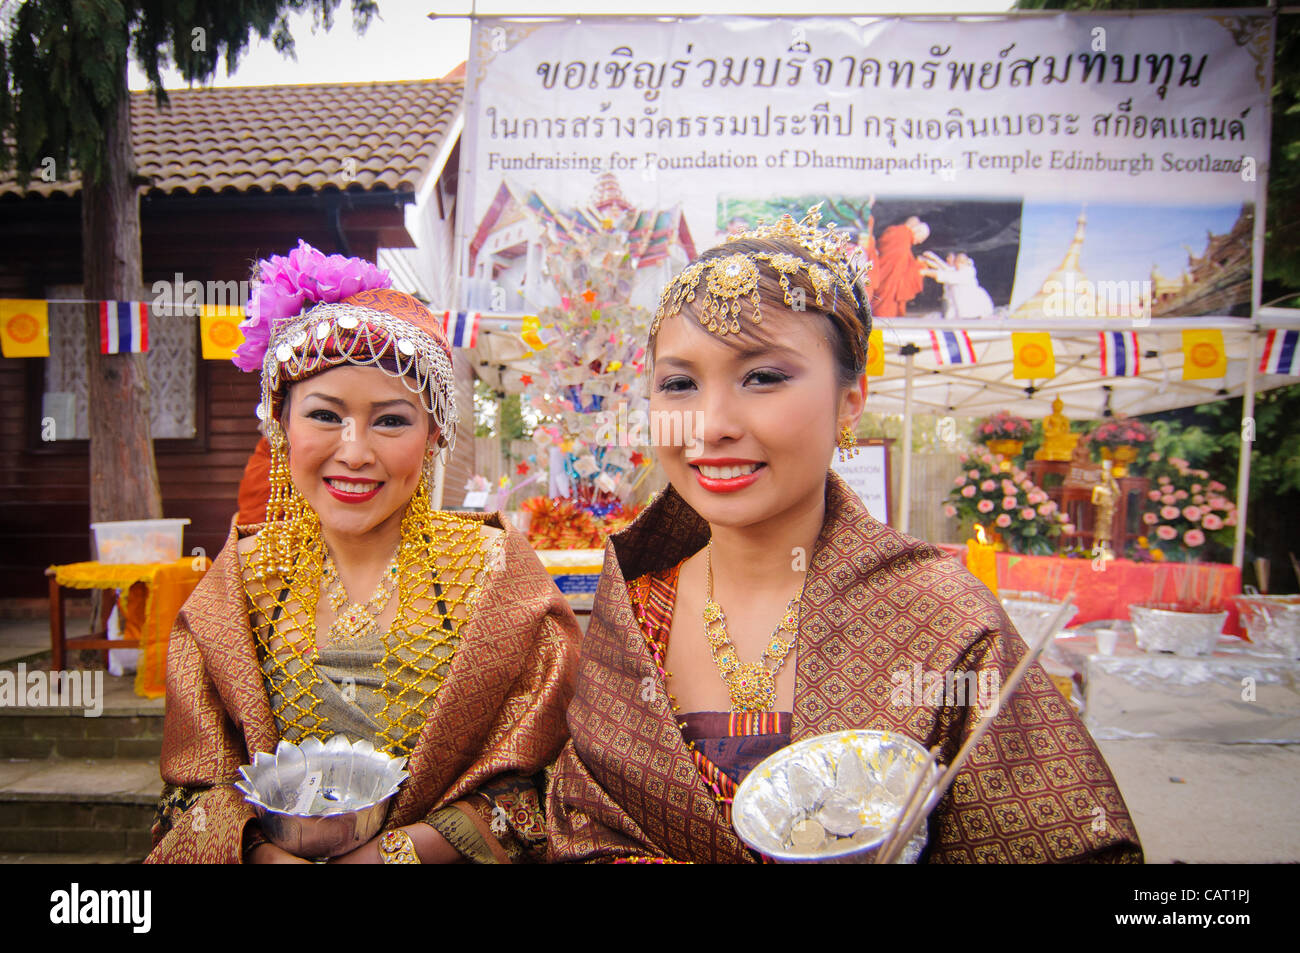 Wimbledon, Londres, Royaume-Uni, 15 avril 2012. À la Thai temple de Wat Buddhapadipa pour célébrer Songkran, Nouvel An thaï, les bénévoles sollicitent des dons. Banque D'Images